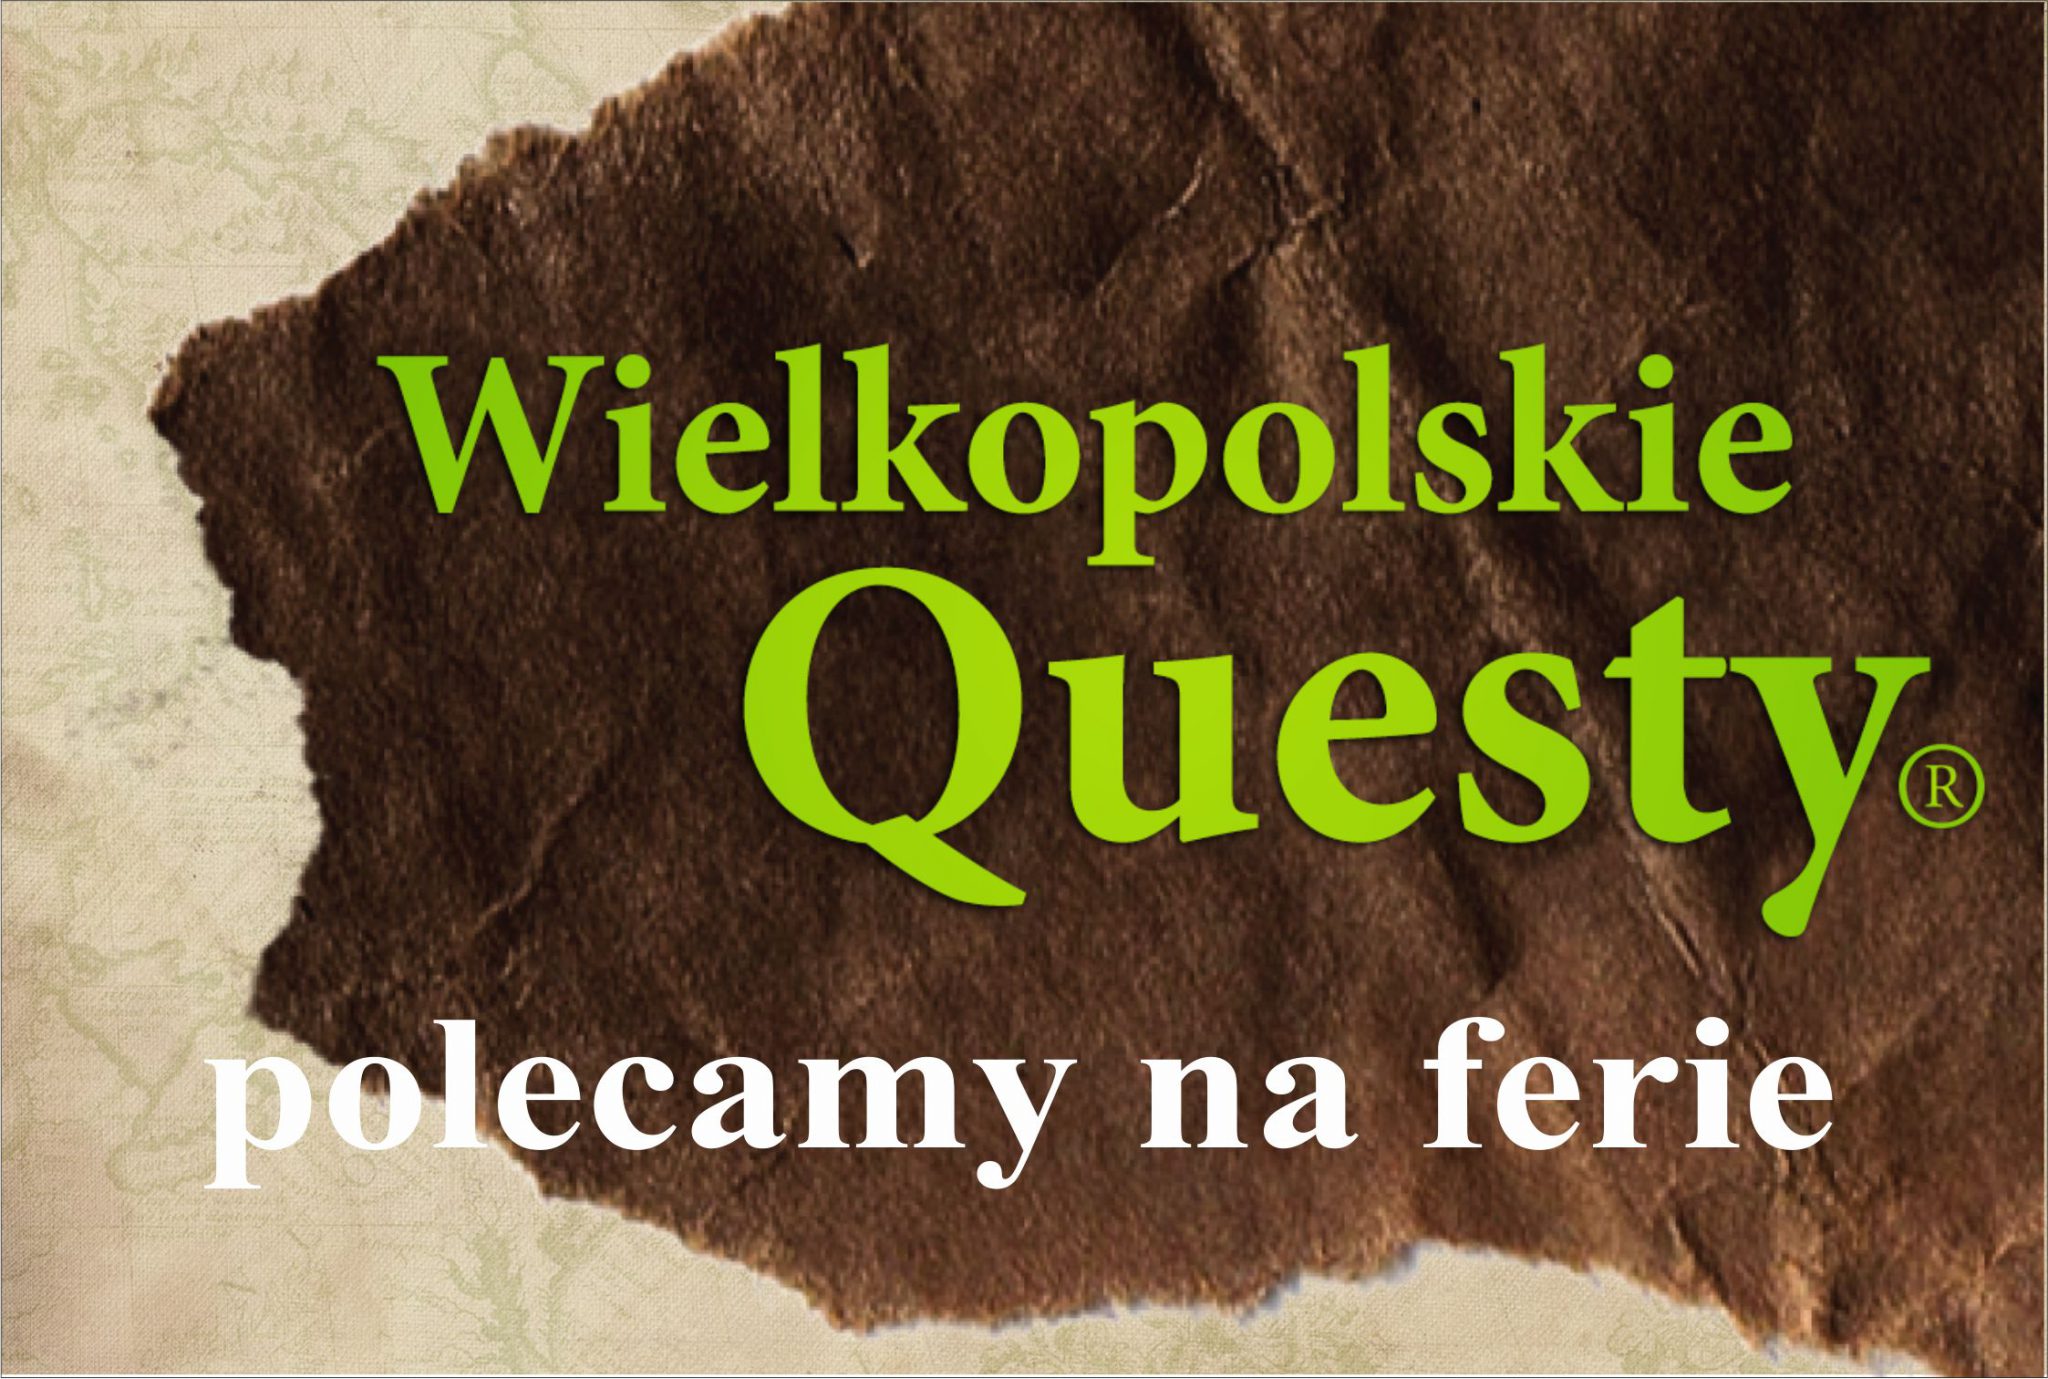 grafika: brązowa łatka z zielonym napisem Wielkopolskie Questy; dodatkowy tekst: polecamy na ferie (białe litery)